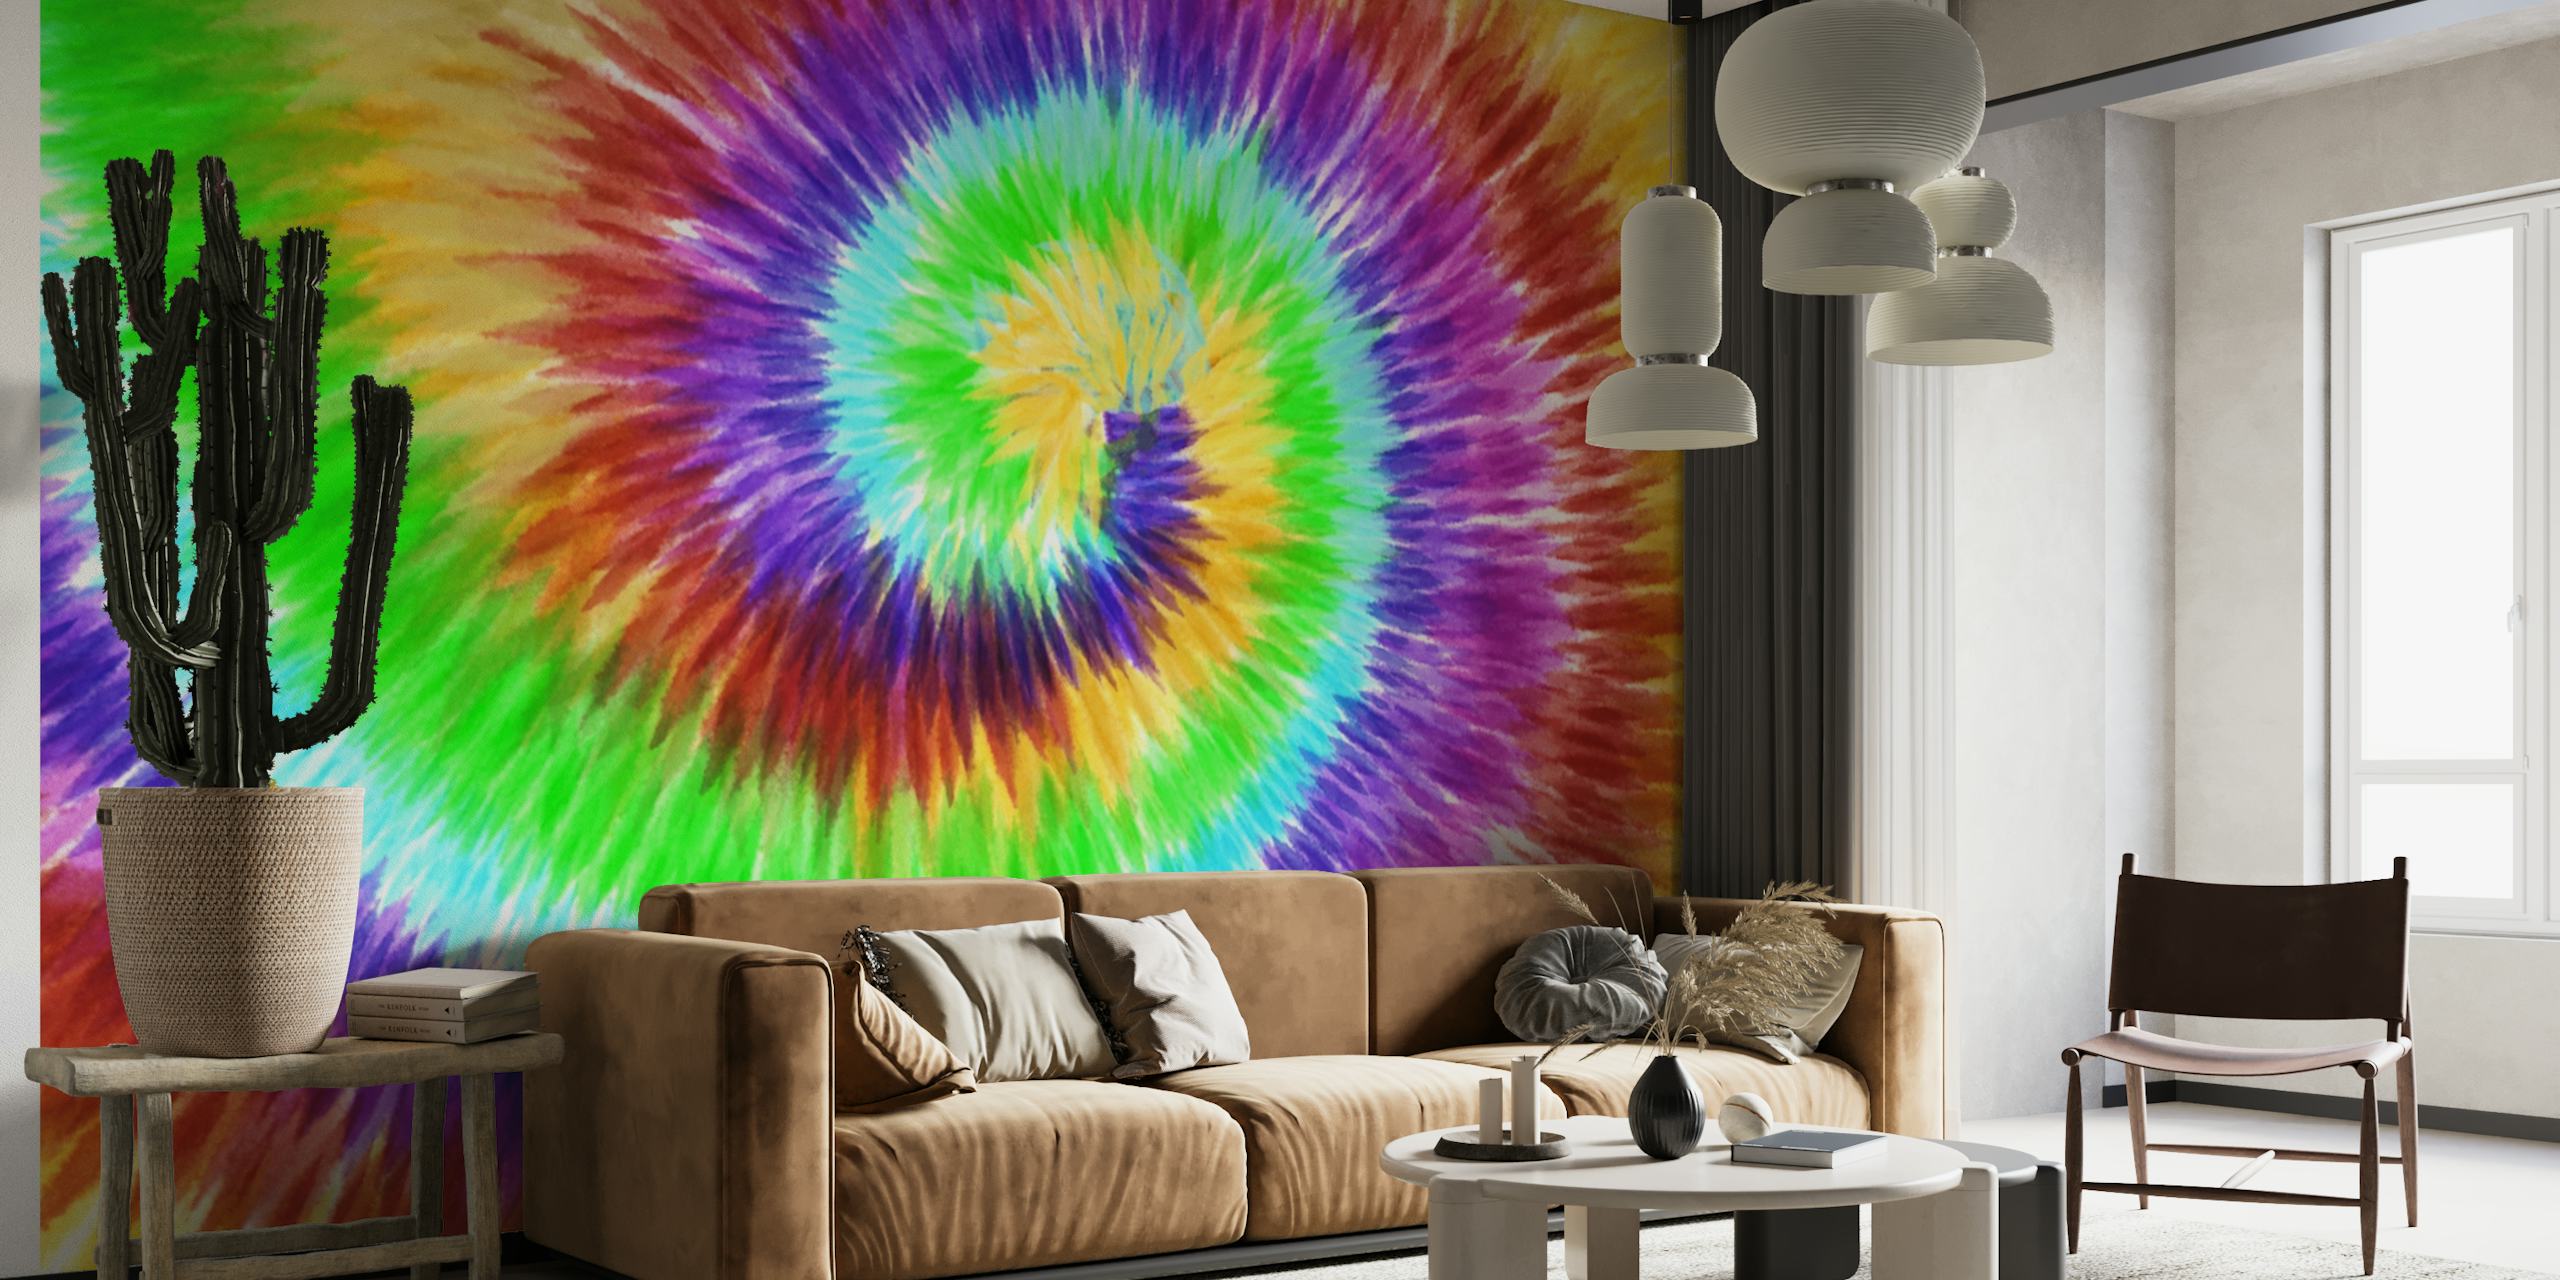 Kolorowa, spiralna fototapeta z barwnikiem tie-dyre, zapewniająca żywy wystrój pokoju